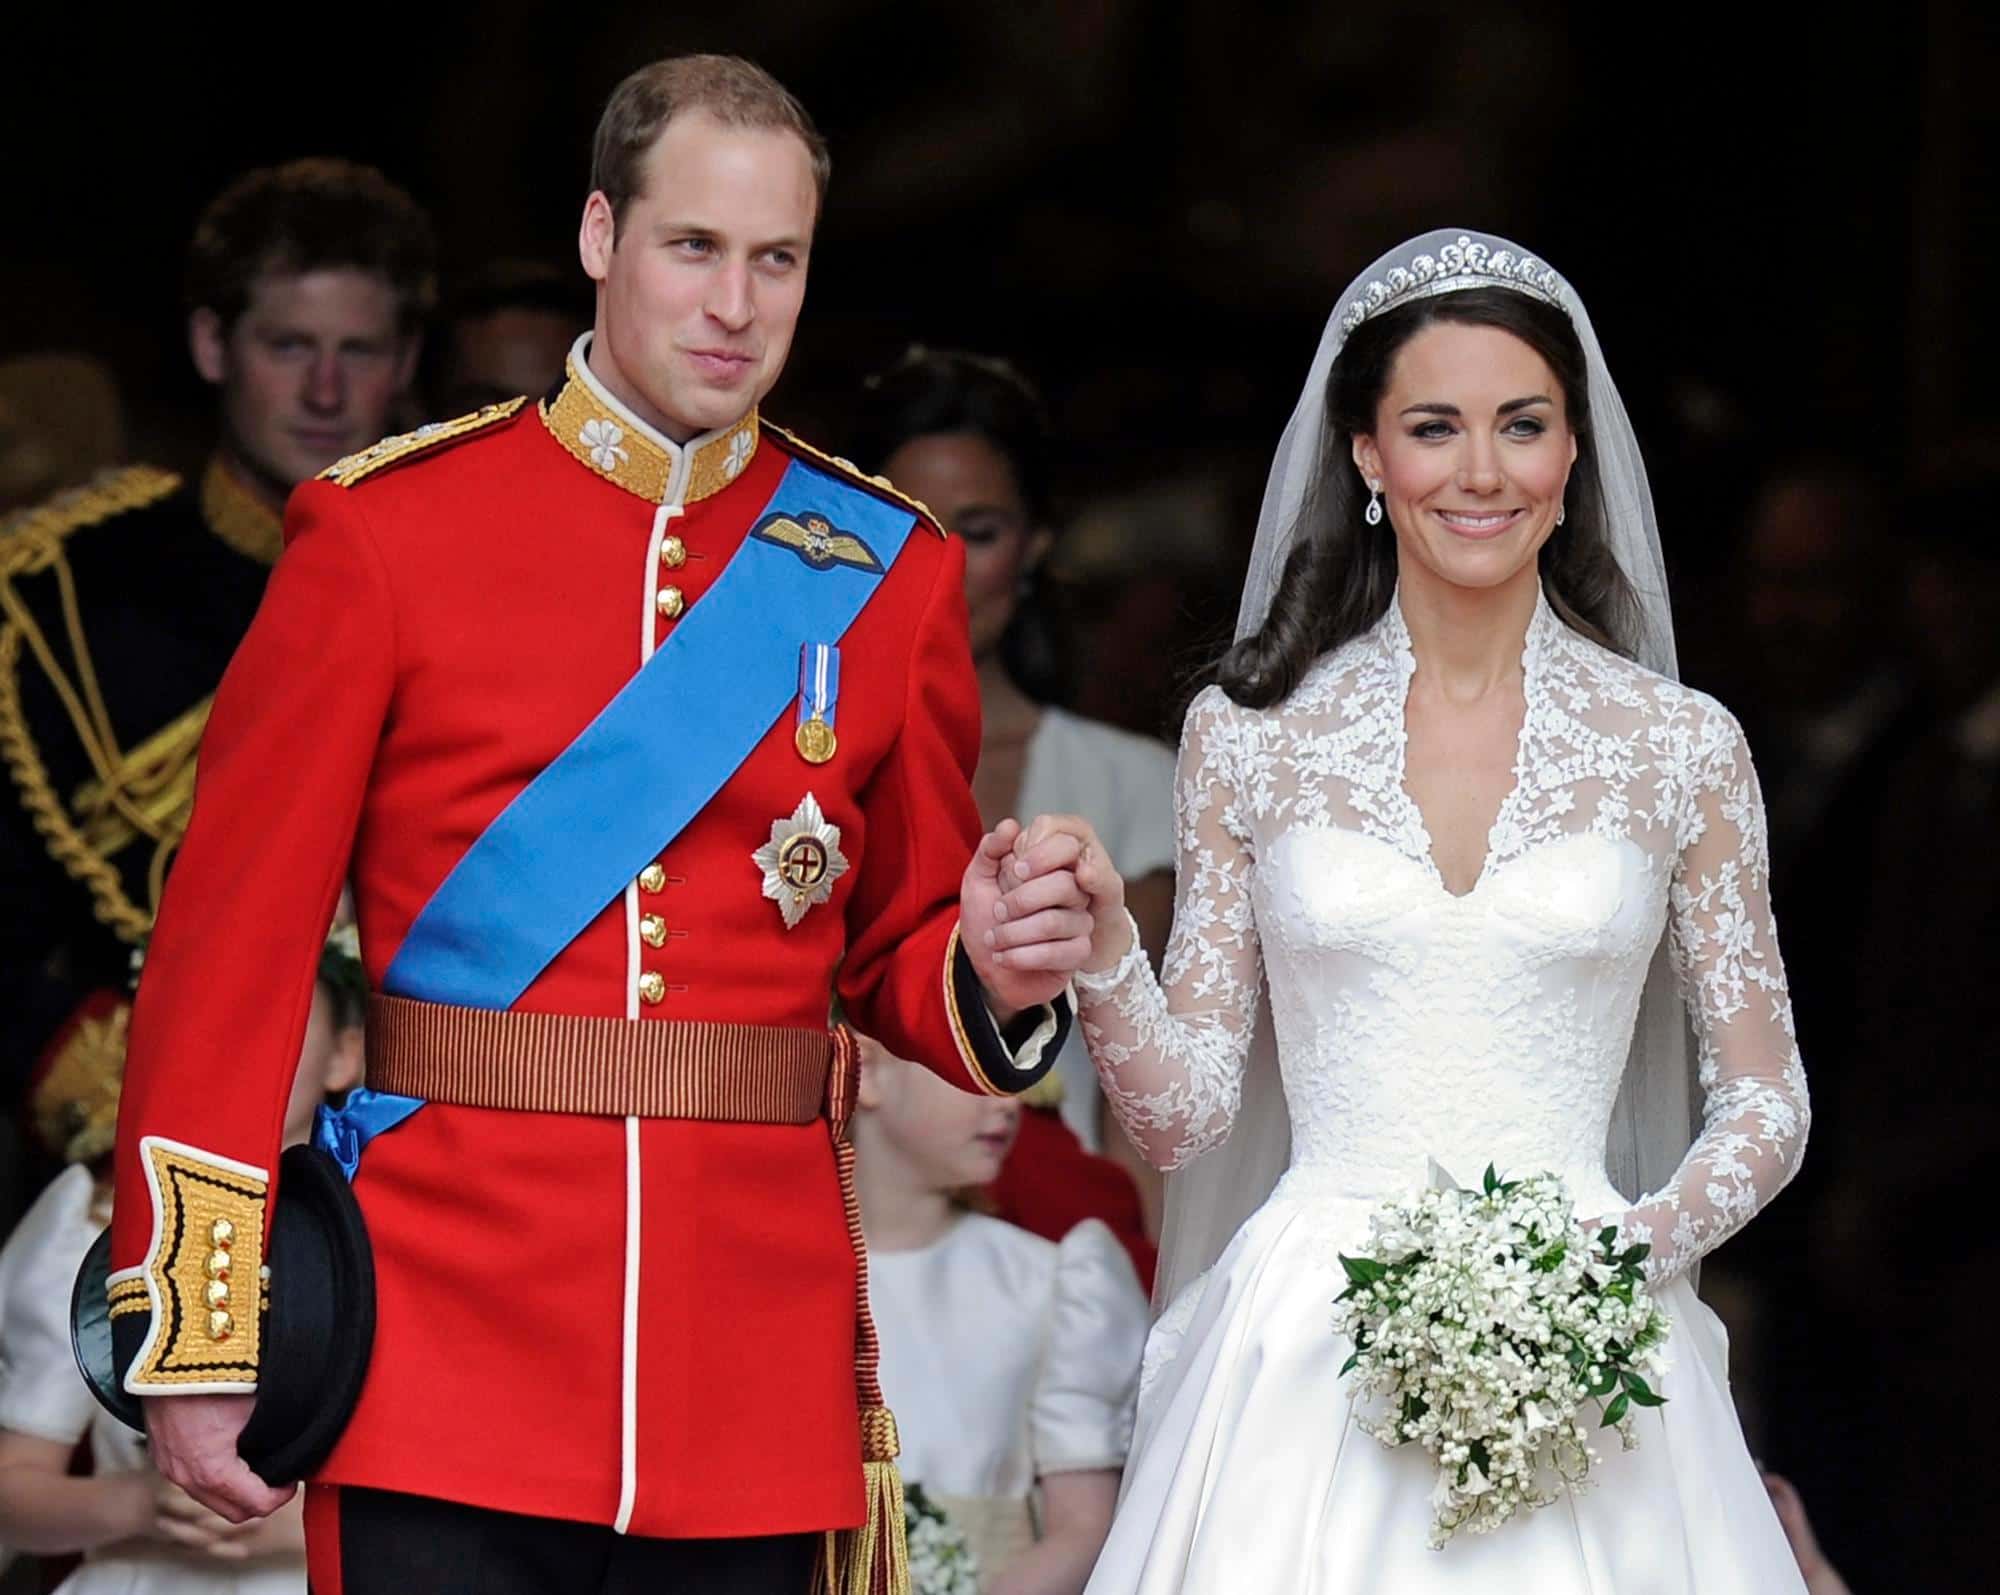 မင်းသား Harry ရဲ့ မင်္ဂလာပွဲက Kate Middleton ဖြစ်ပါတယ်။